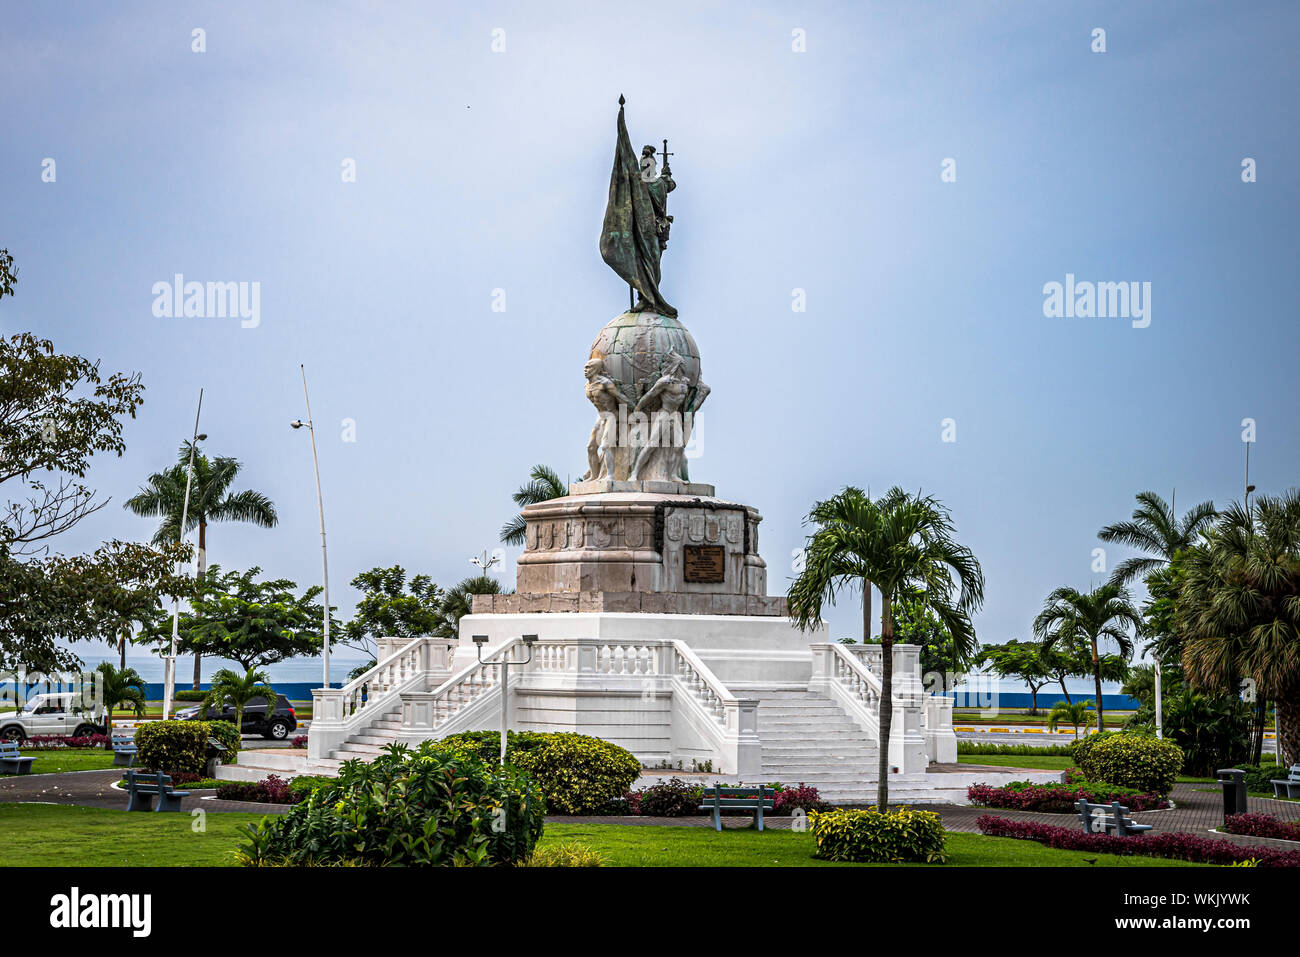 Balboa Monument on cinta costera, Panama City, Panama Stock Photo